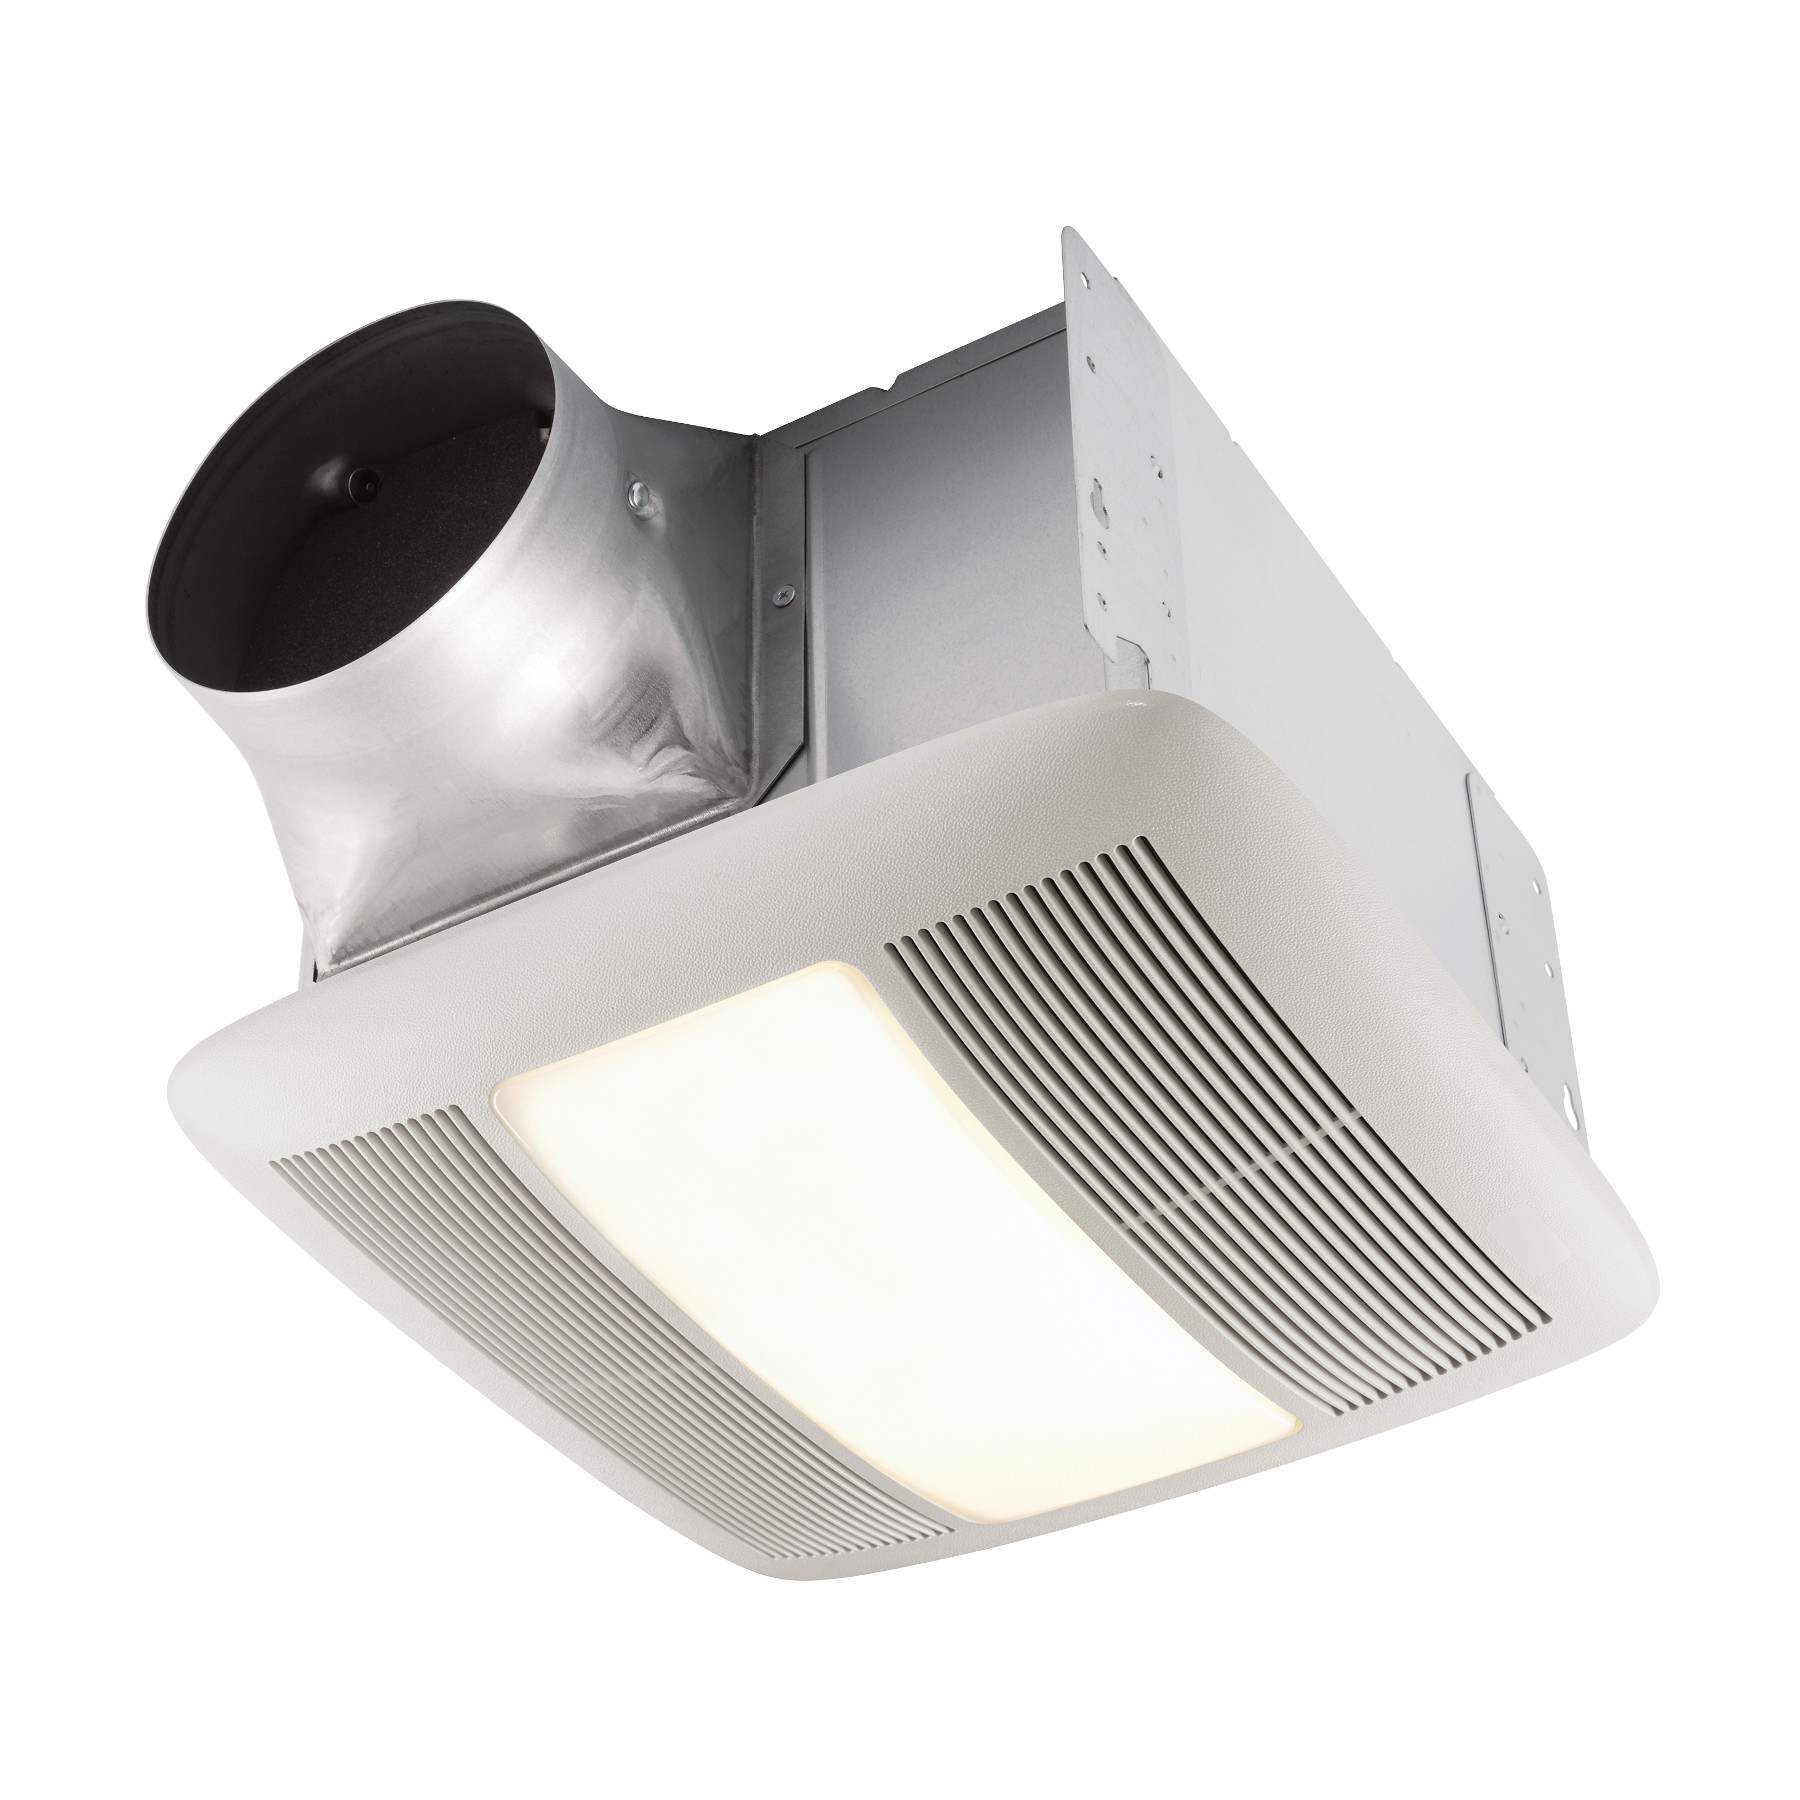 Qt140le Broan 140 Cfm Ventilation Fan Light With Night Lightquiet Bathroom Fan Light Night Light